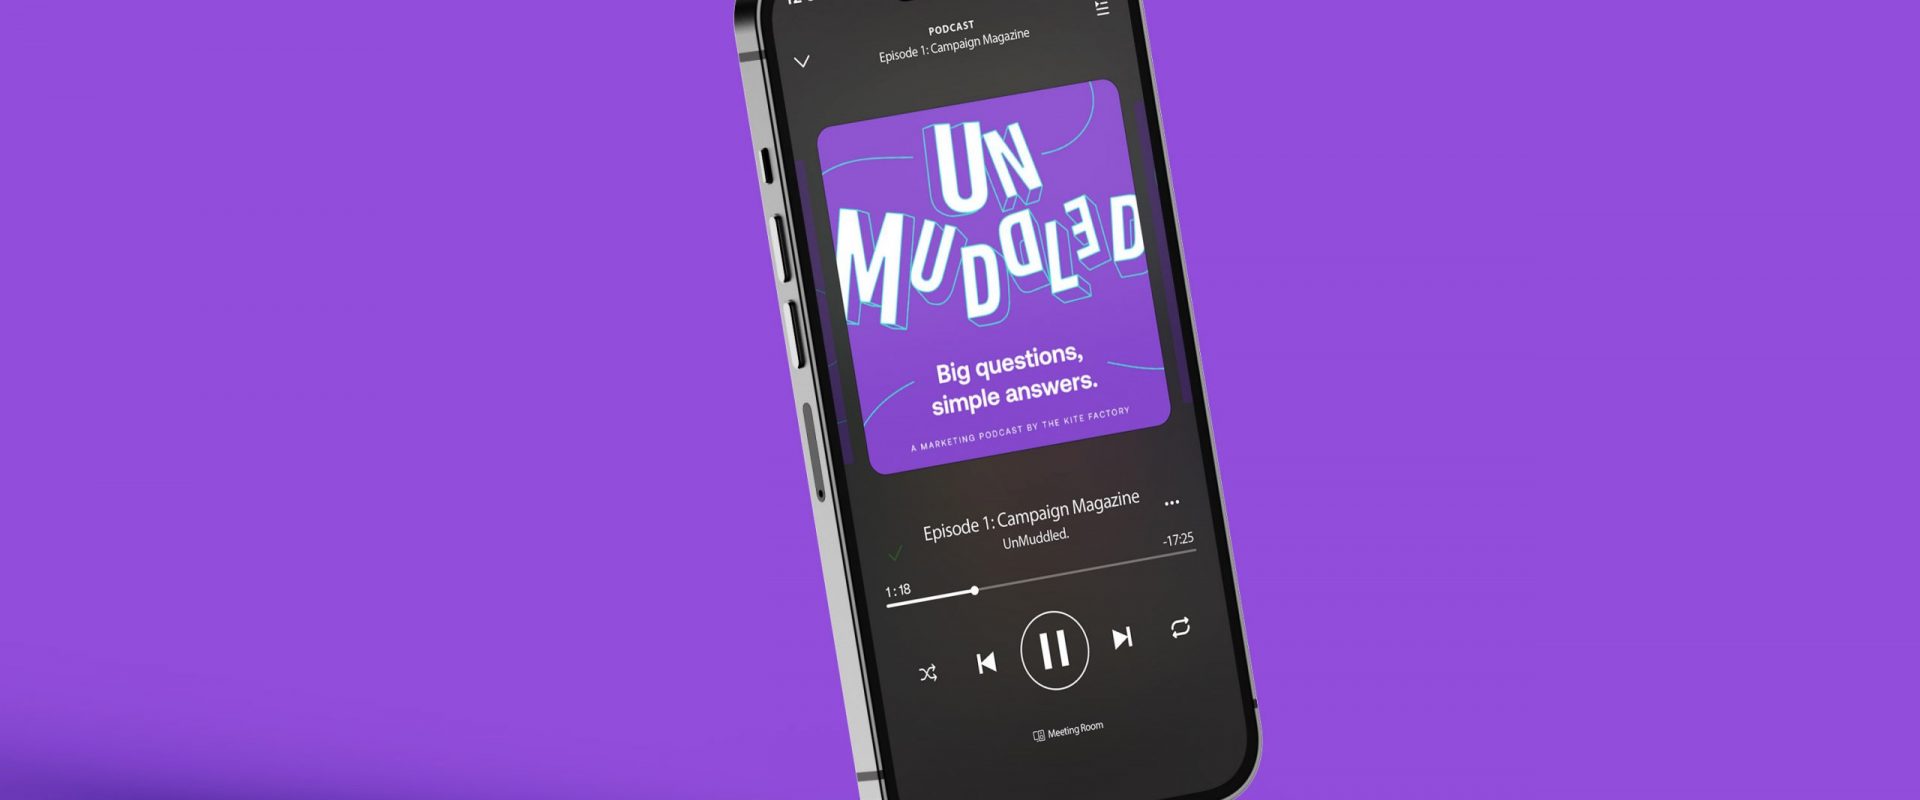 Spotify podcast mockup